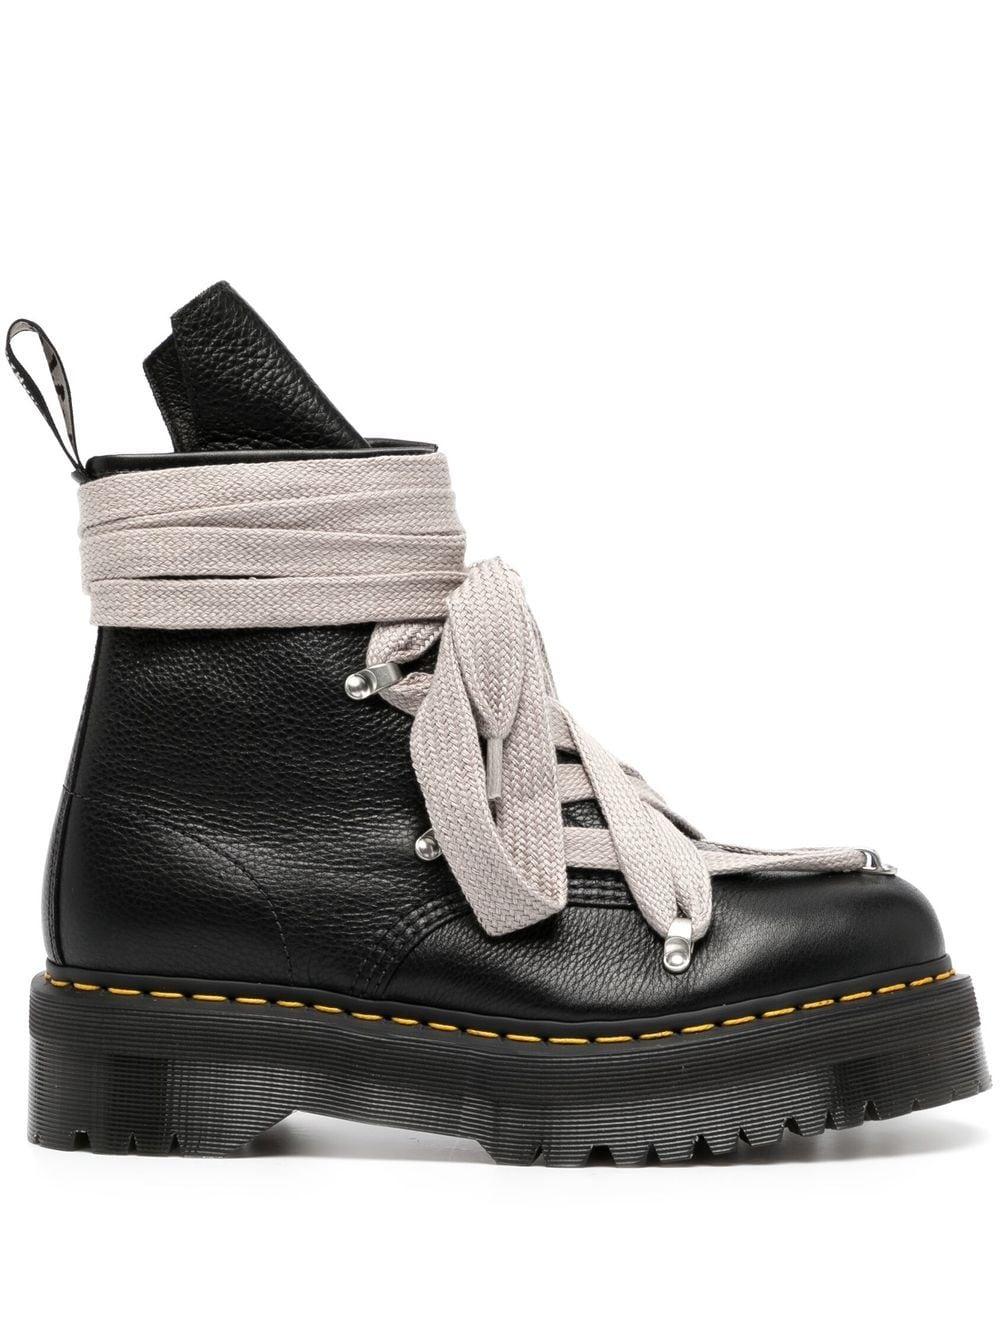 Rick Owens X Dr. Martens 1460 Platform Boots in Black for Men | Lyst UK